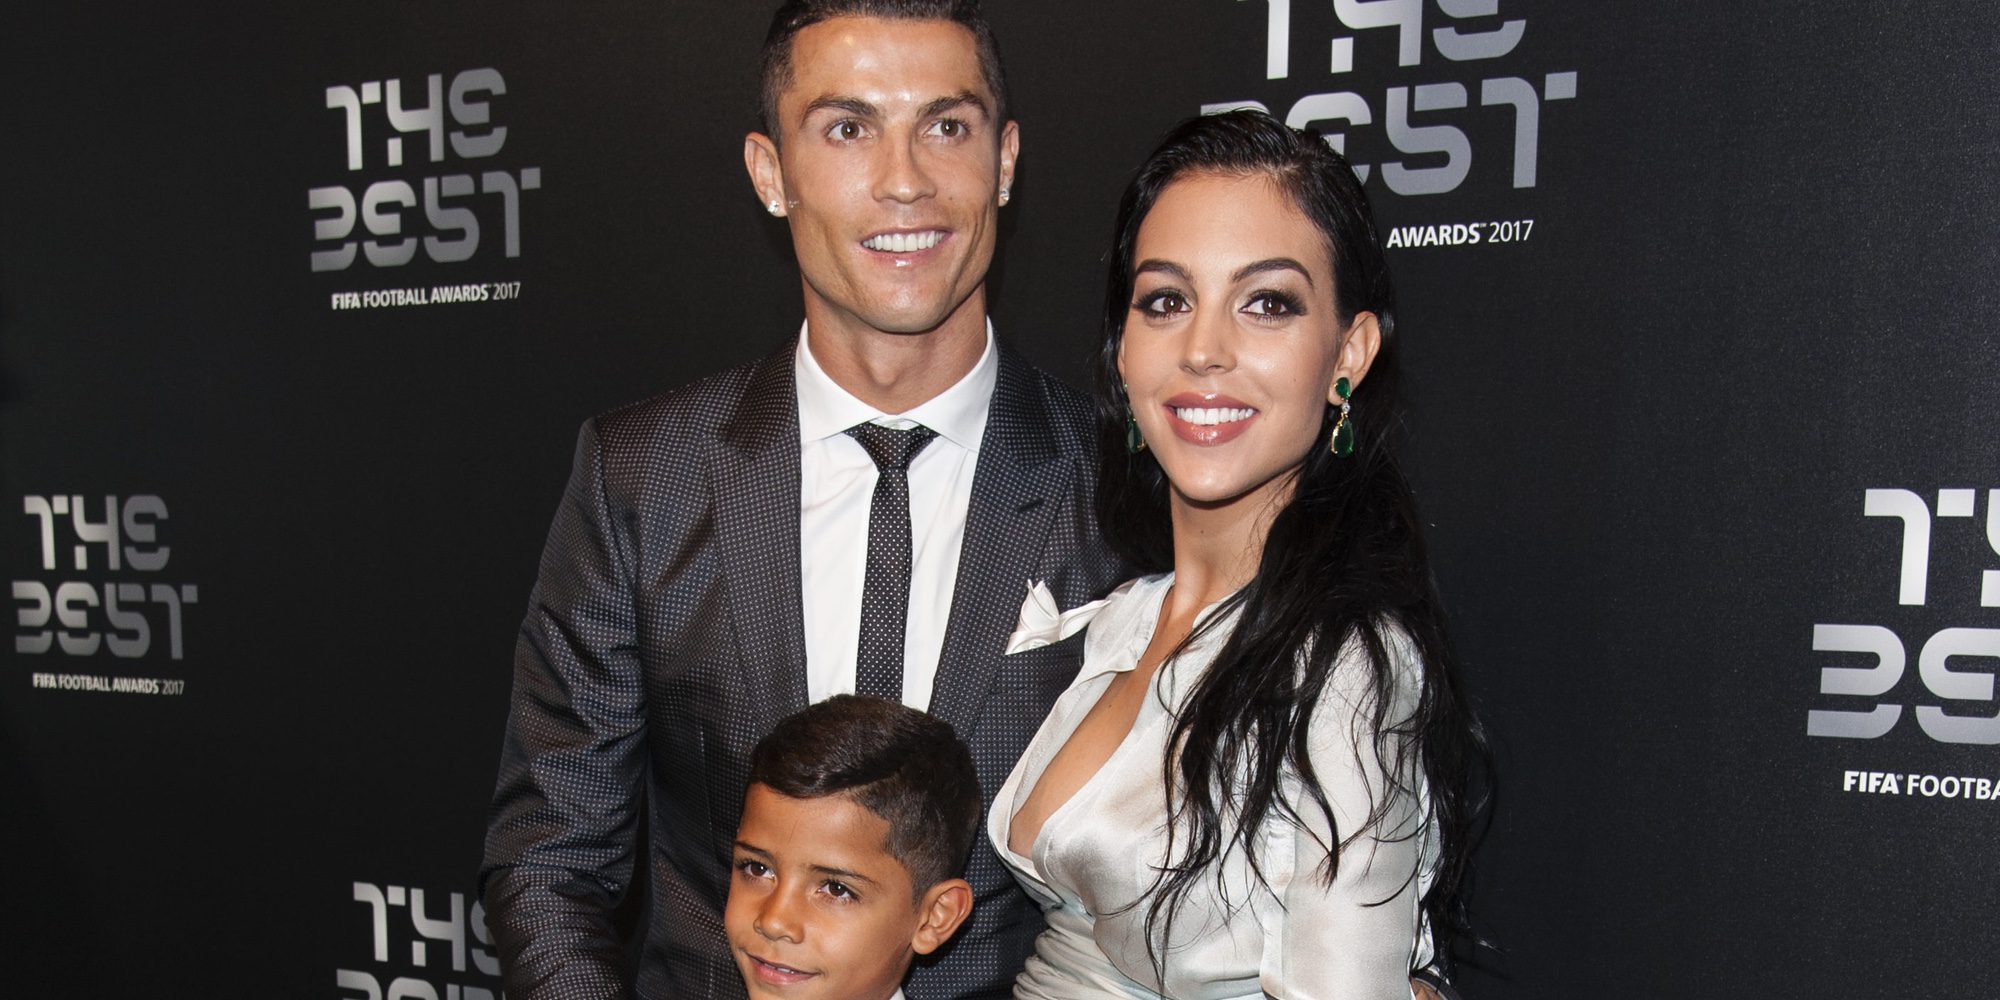 Este es el nombre escogido por Cristiano Ronaldo y Georgina Rodríguez para su hija